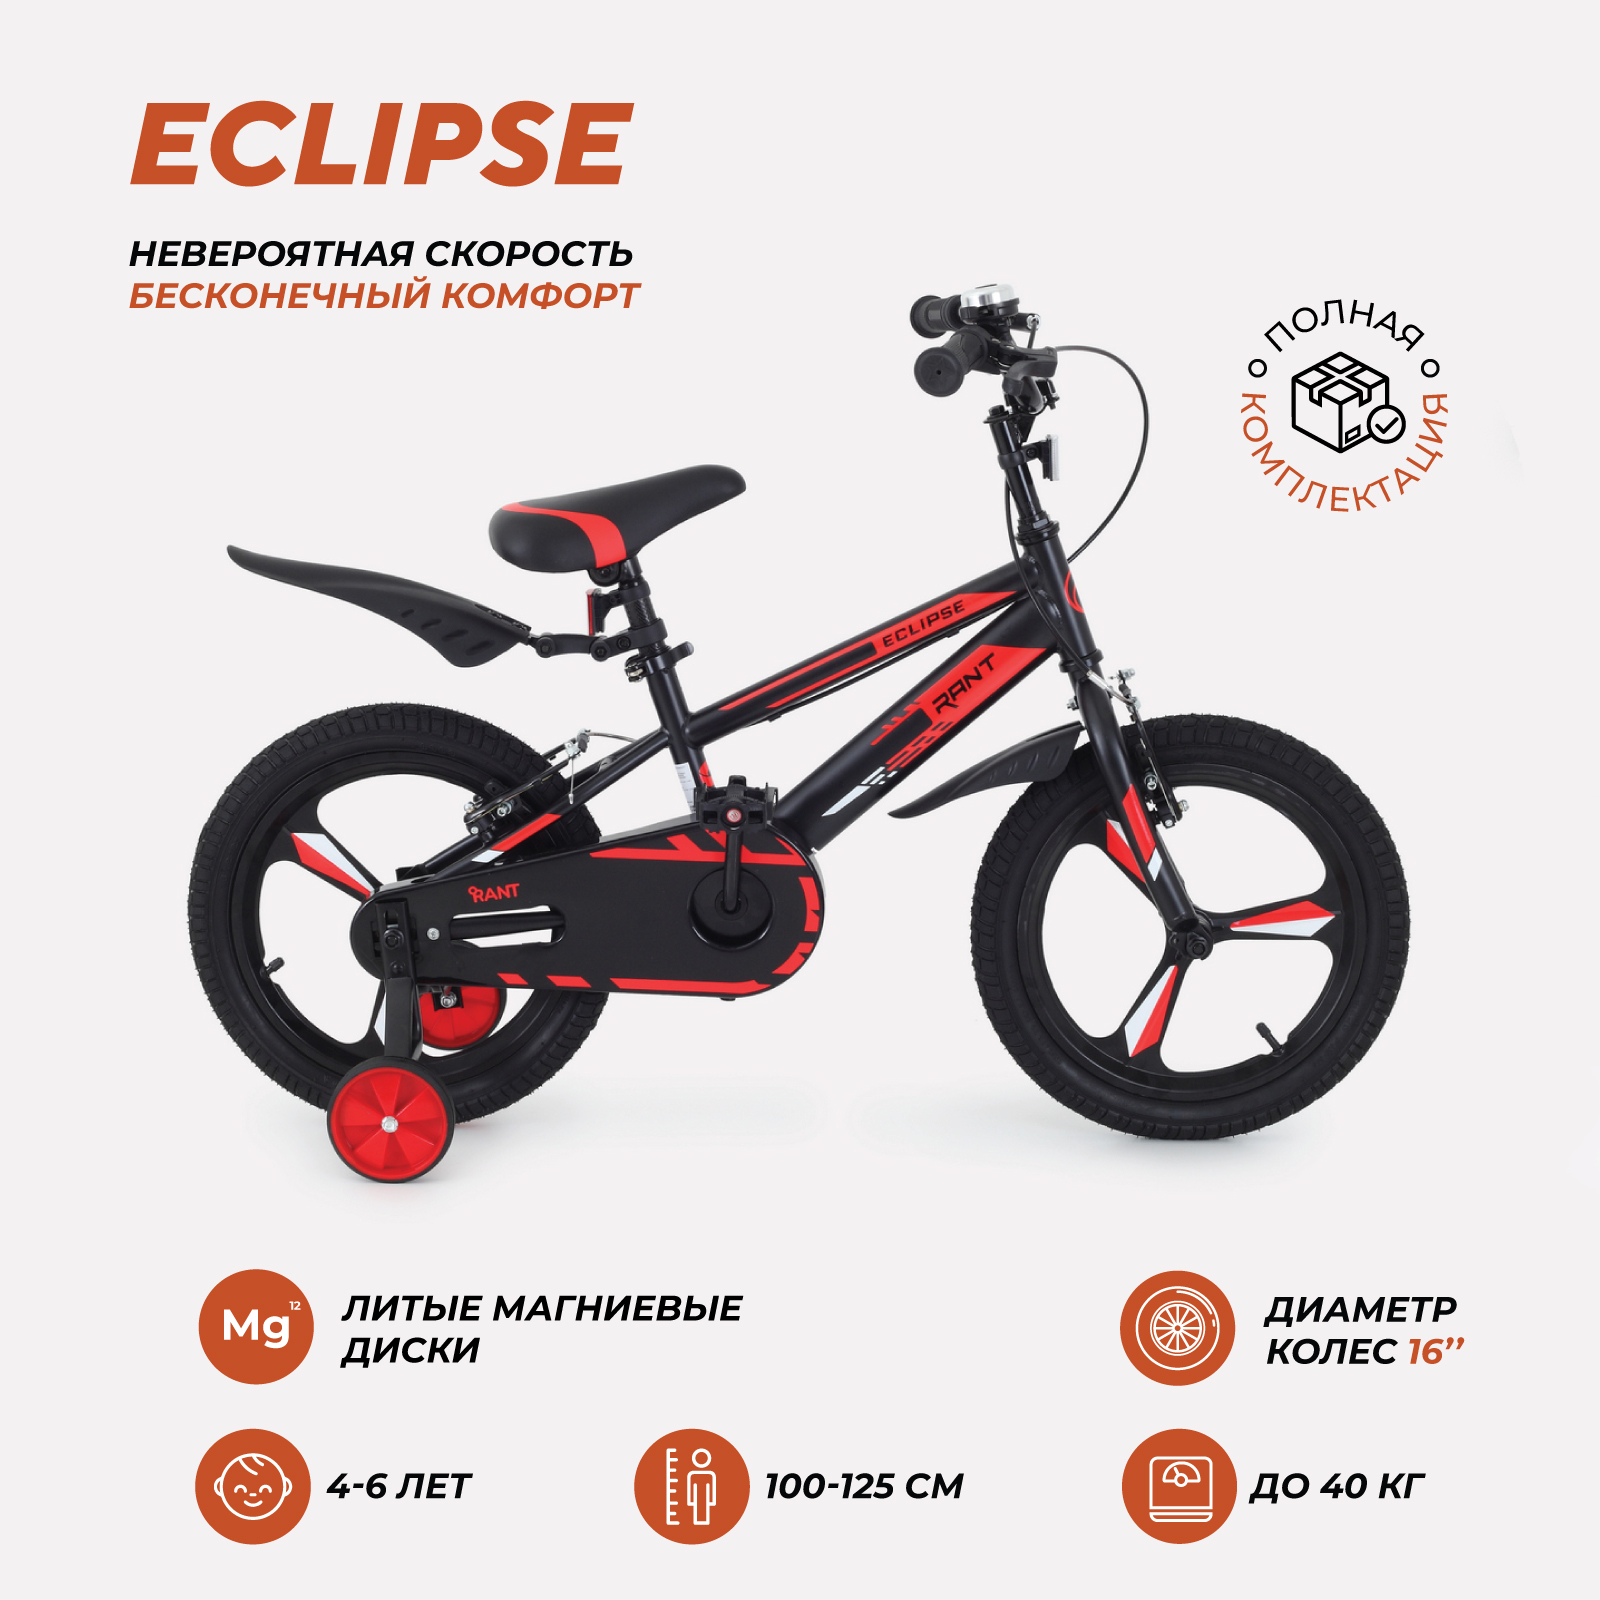 Велосипед двухколесный детский RANT Eclipse черно-красный